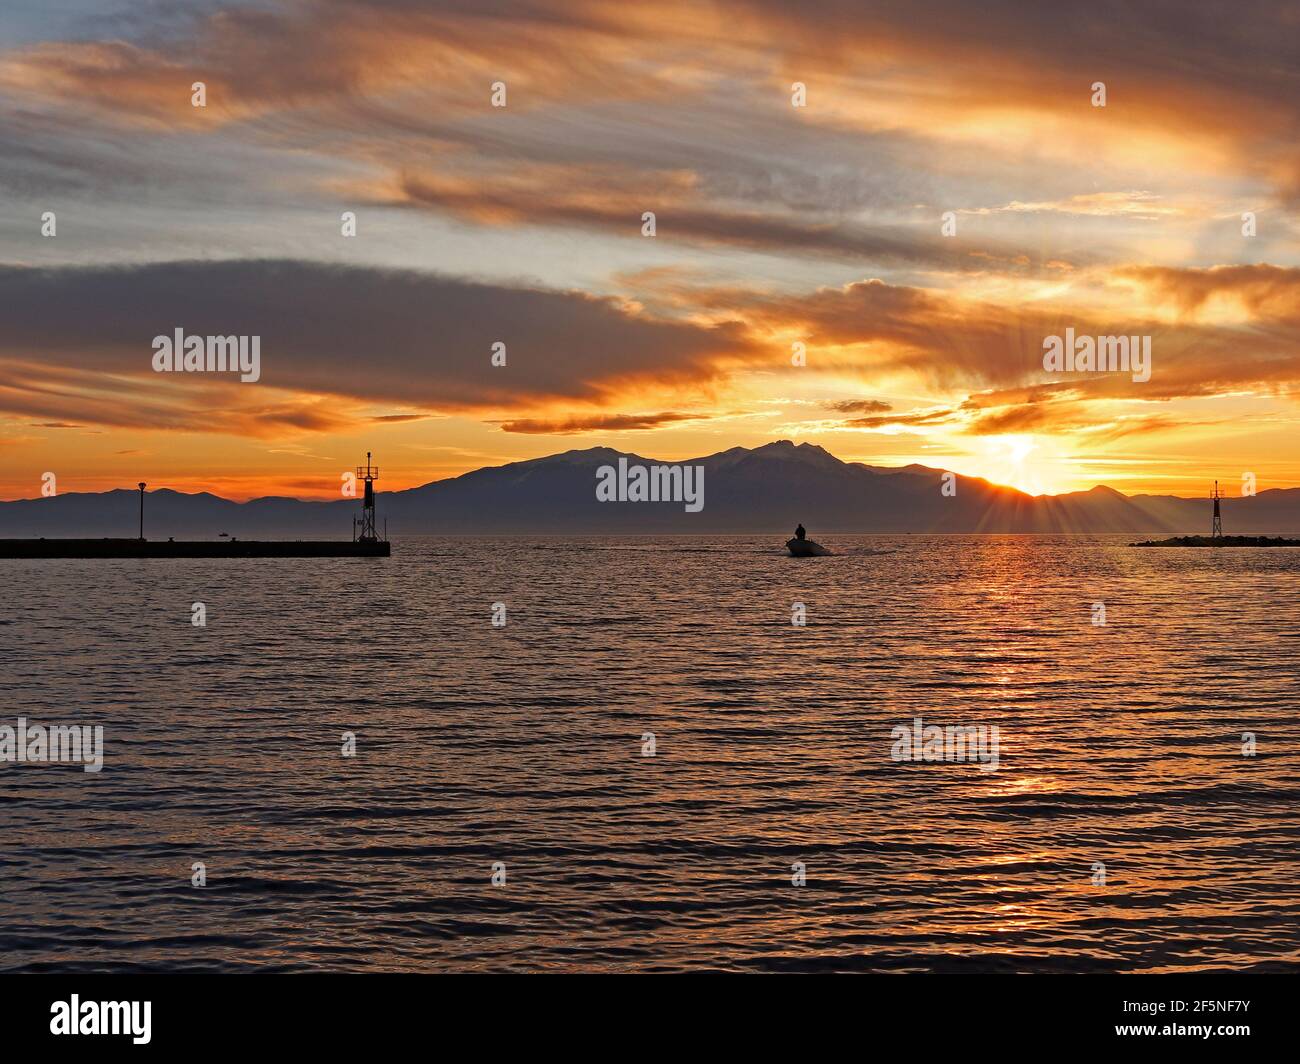 Epanomi, Thessaloniki, Griechenland. Ormos Epanomis, der Eingang des Docks bei Sonnenuntergang und ein Fischerboot, das einfährt Stockfoto